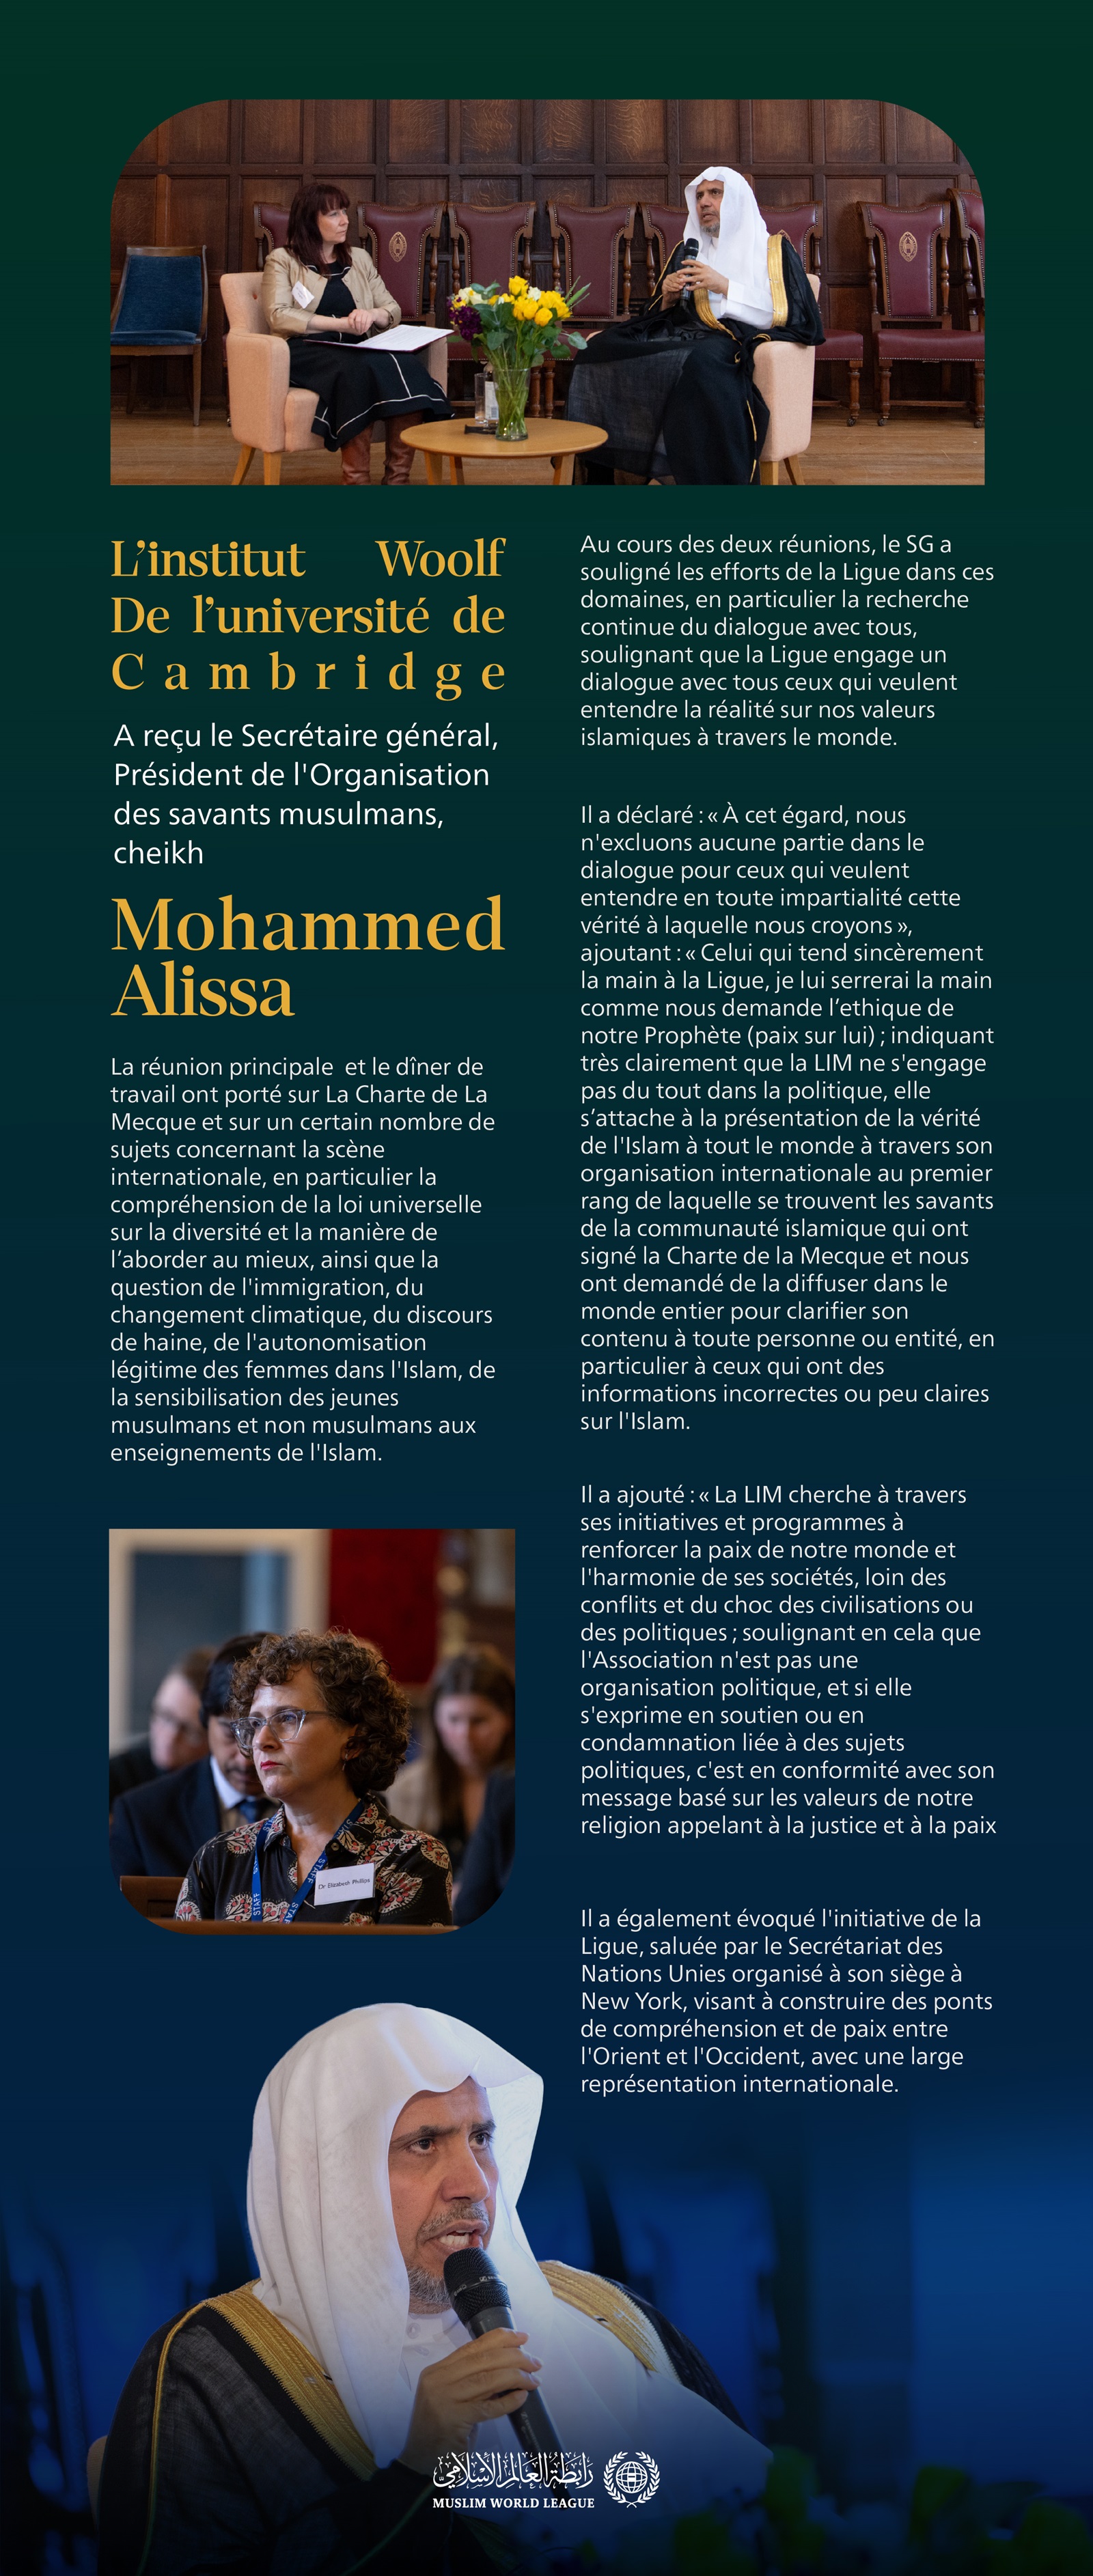 le Secrétaire général, cheikh Mohammed Alissa, a passé en revue le contenu de La Charte Mecque, l’autonomisation des femmes, l'immigration, le changement climatique et un certain nombre de questions islamiques et humanitaires urgentes.